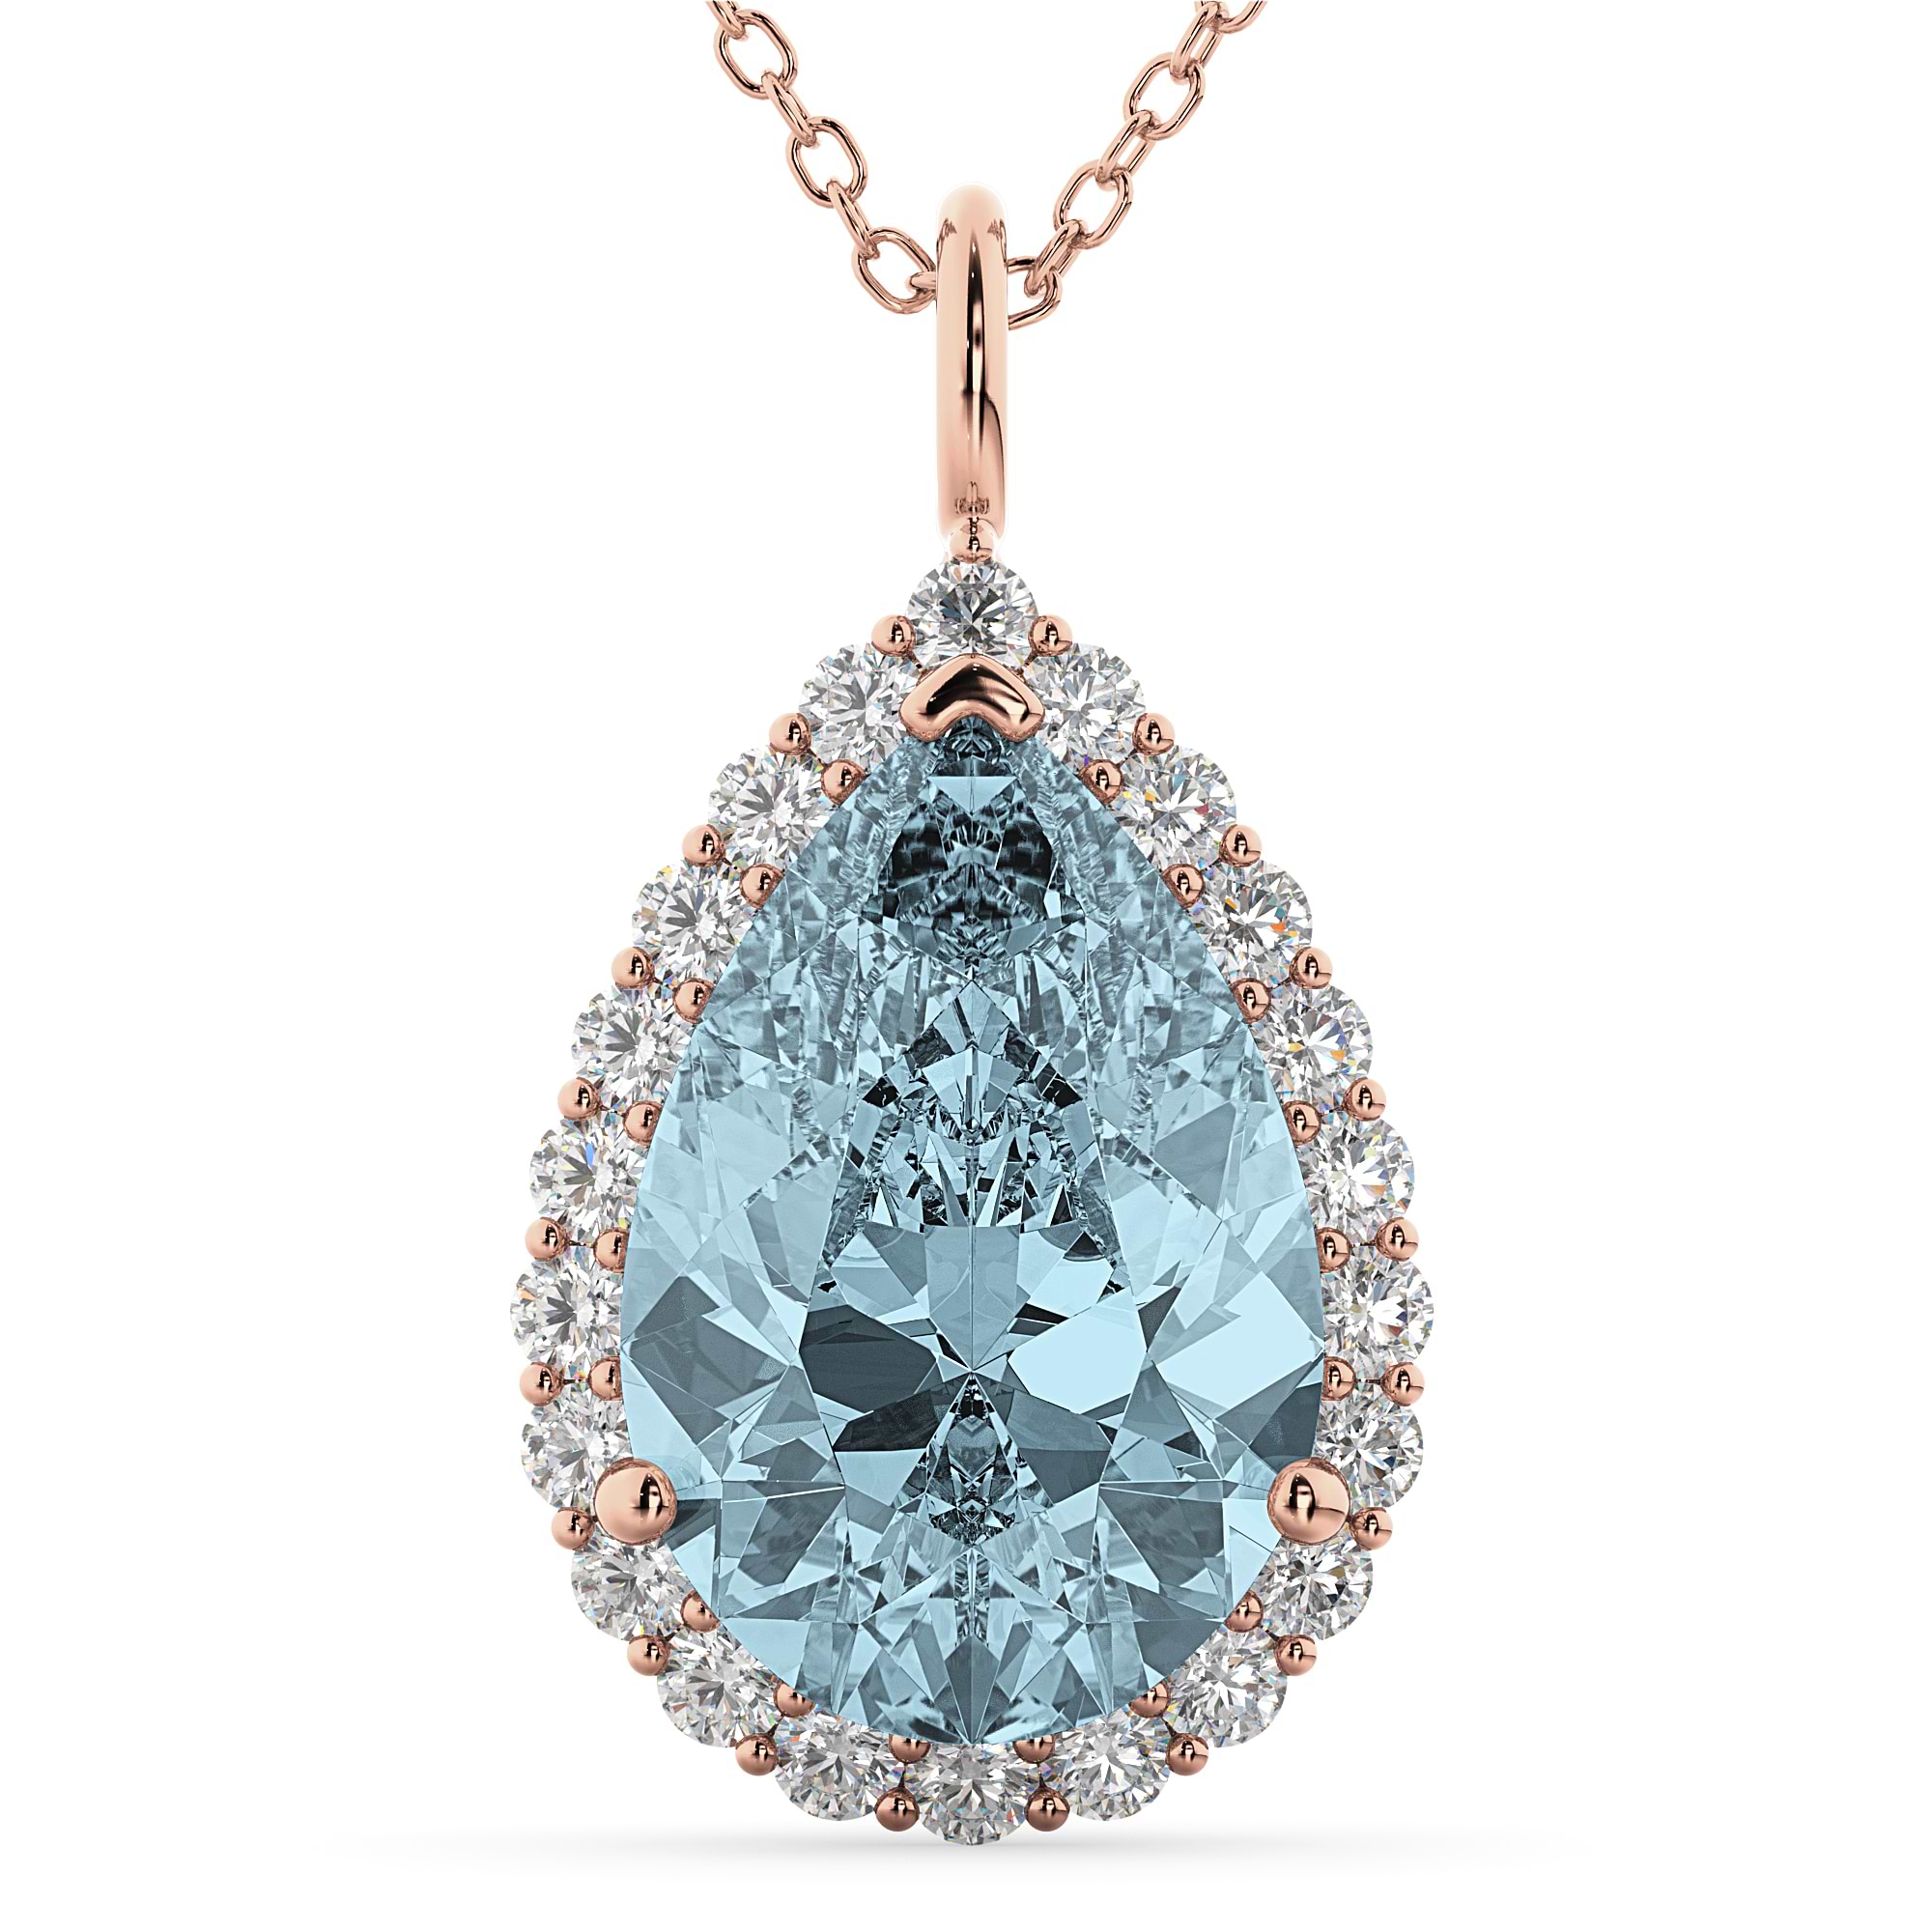 Halo Aquamarine & Diamond Pear Shaped Pendant Necklace 14k Rose Gold (6.04ct)